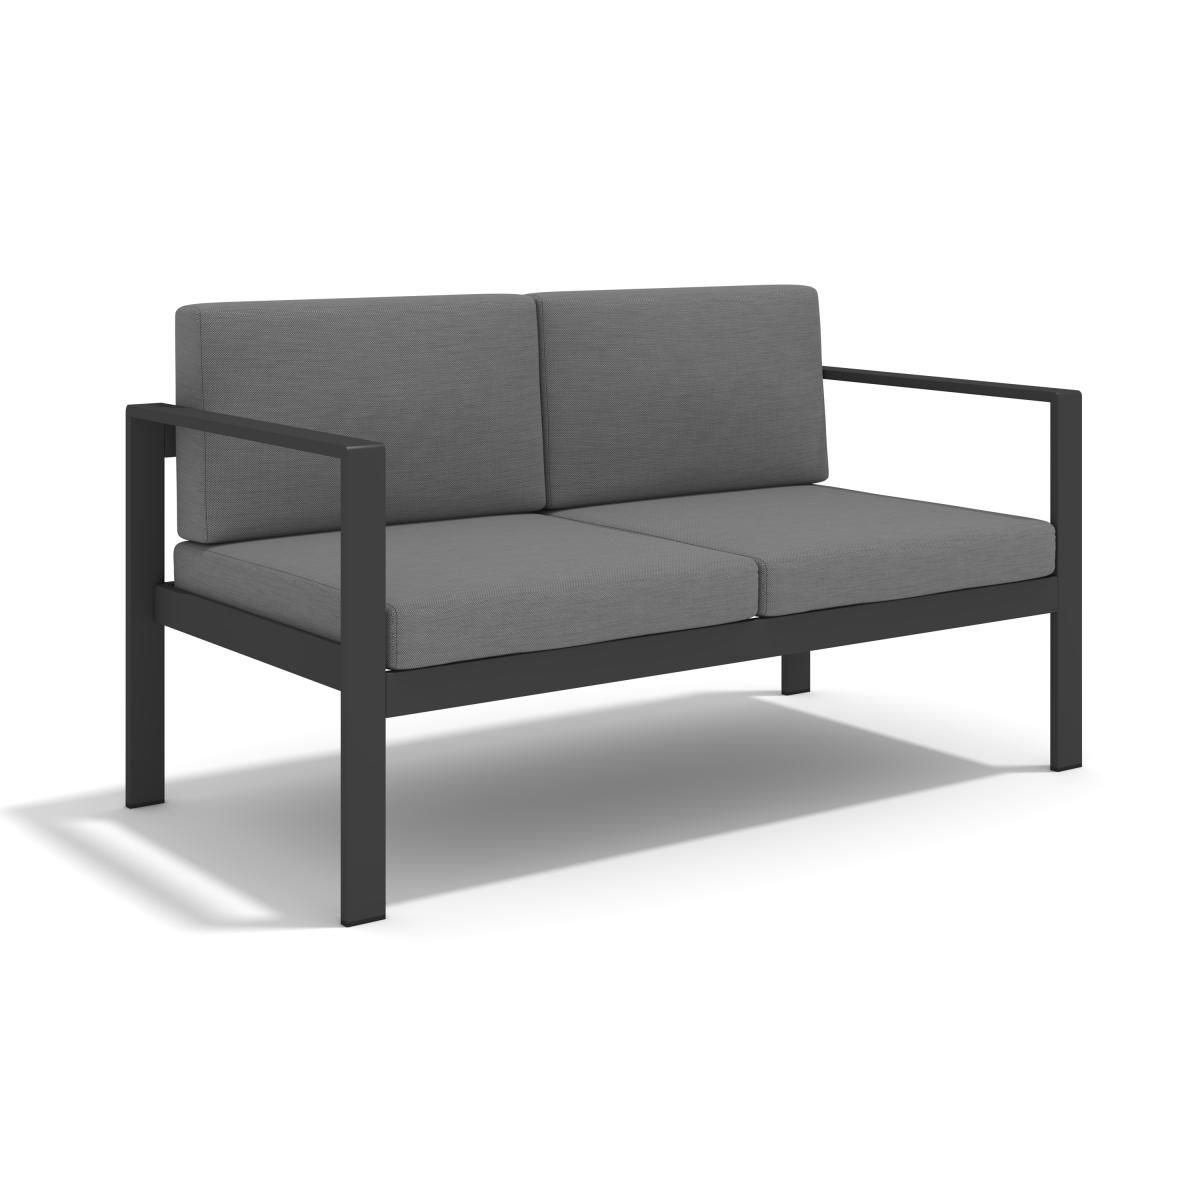 Aluminum Modern 4 Piece Sofa Seating Group For Patio Garden Outdoor